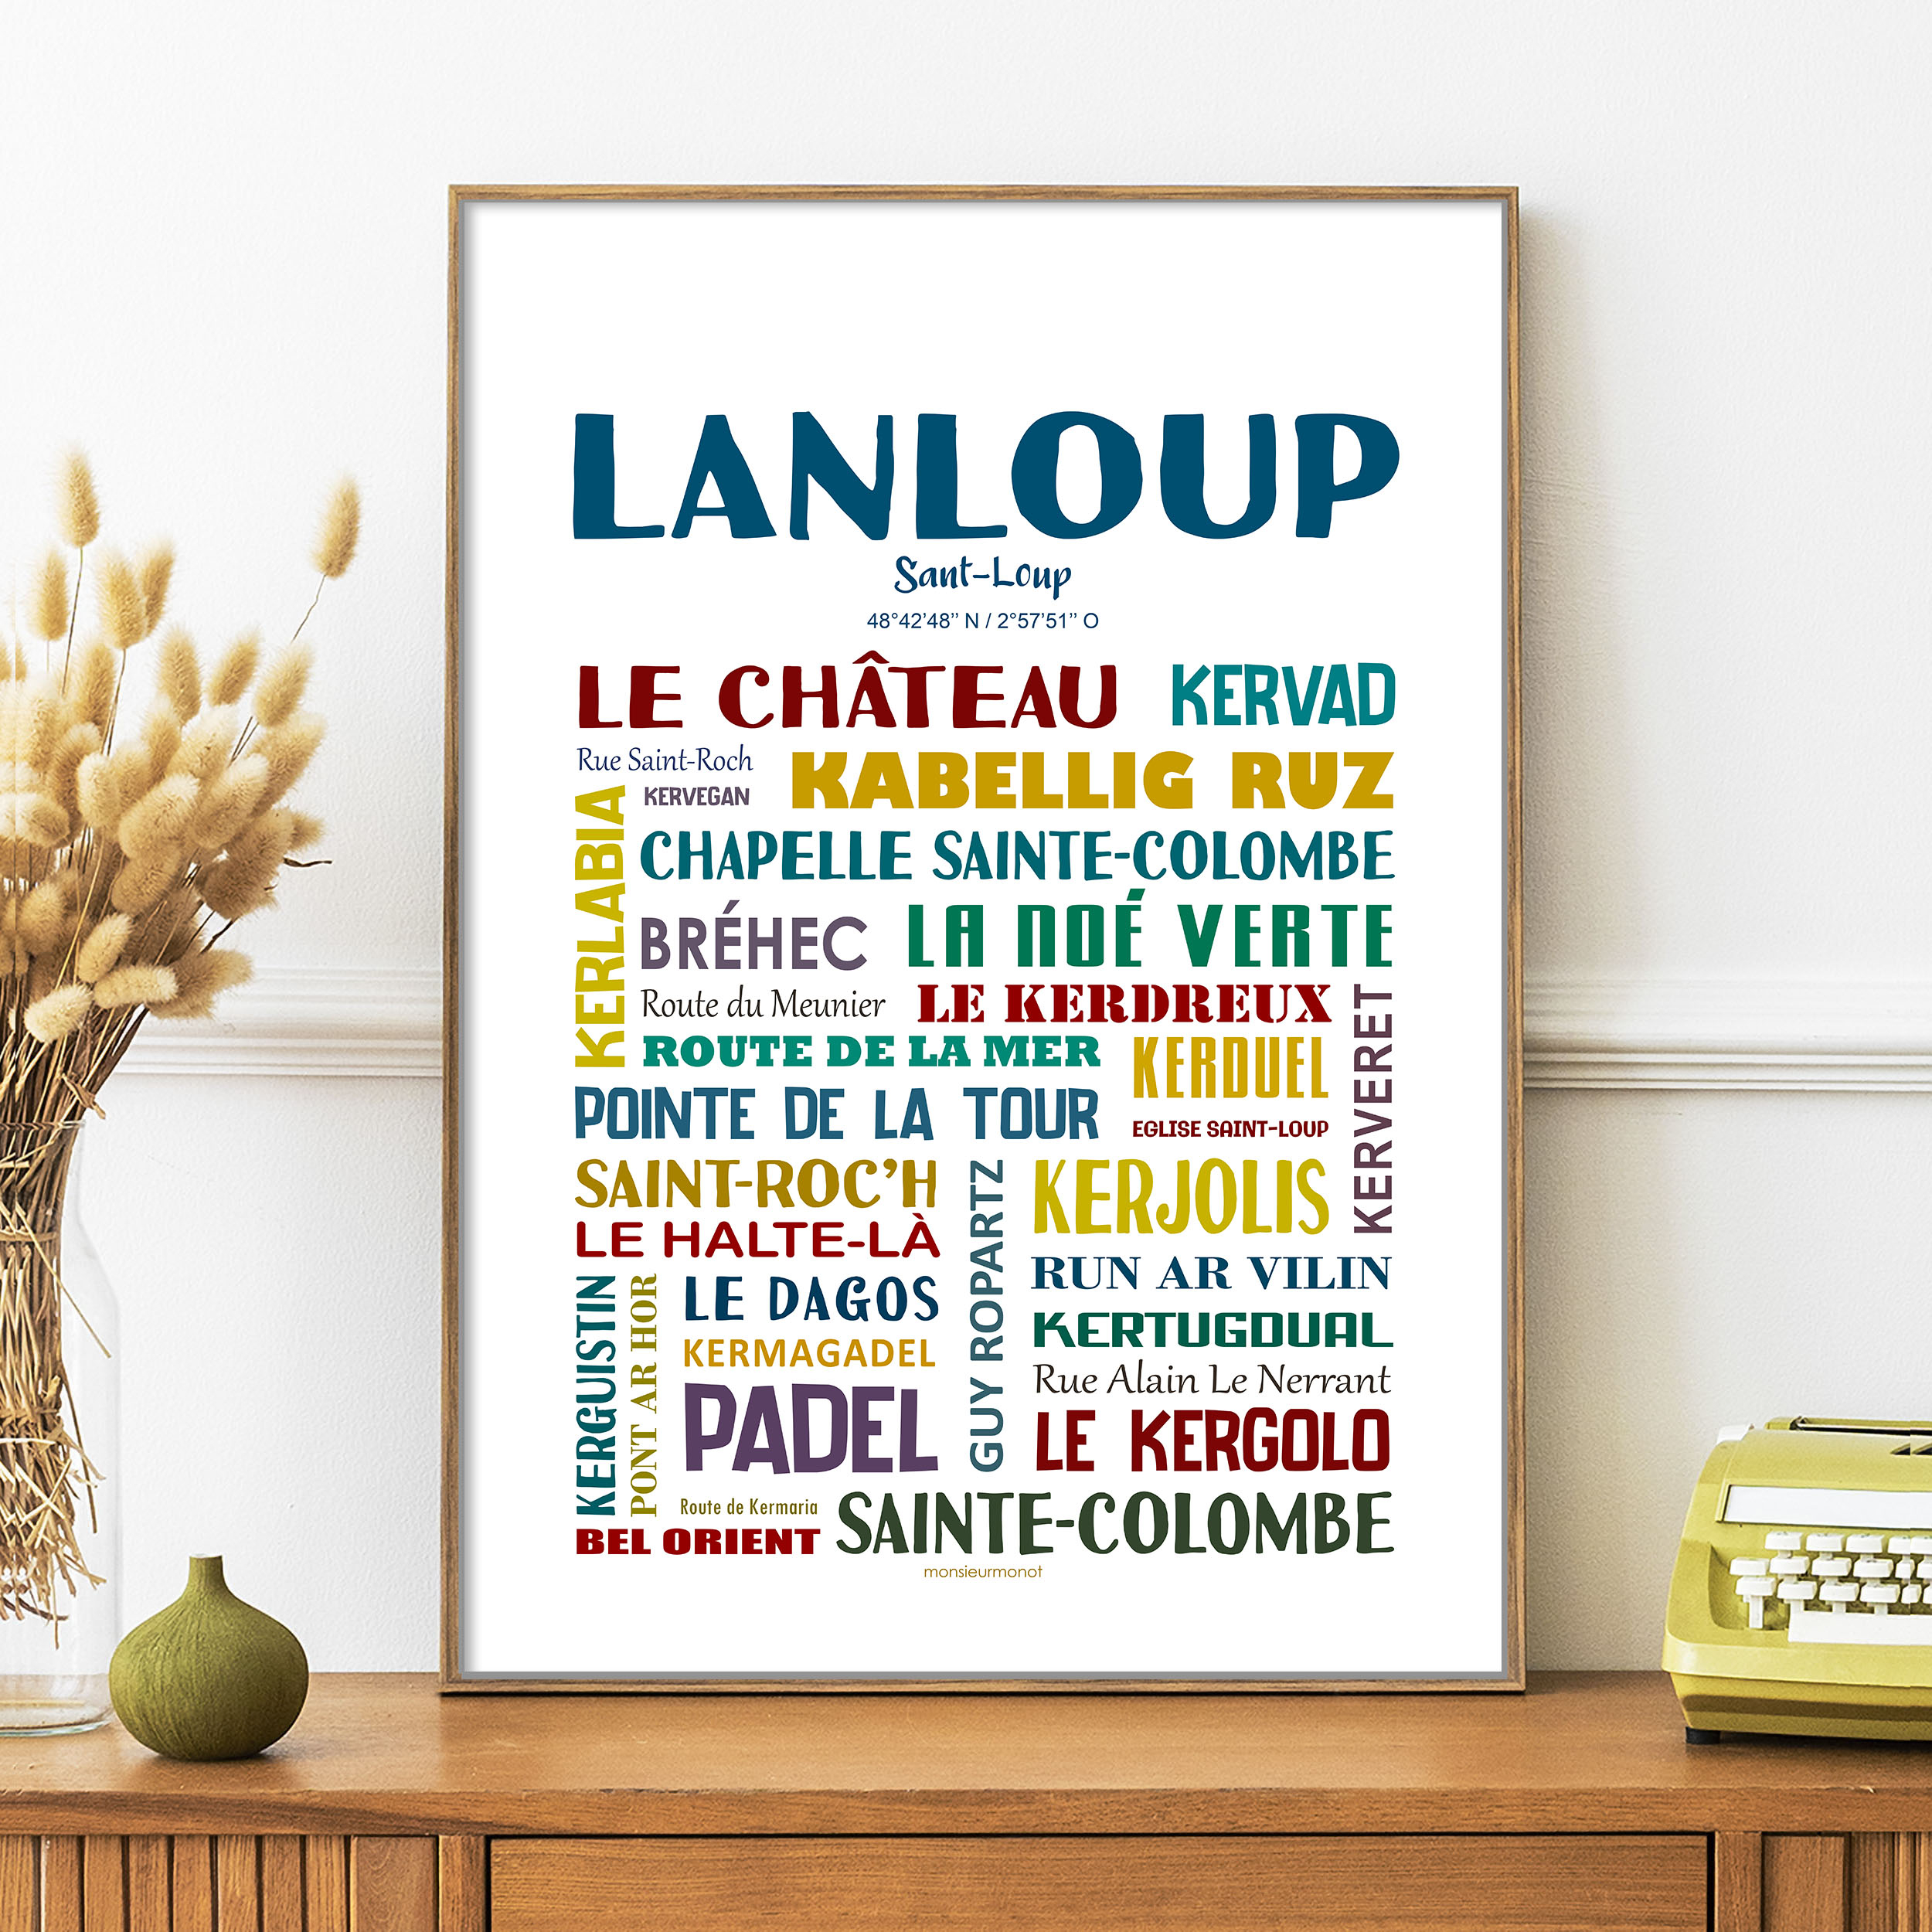 lanloup 2